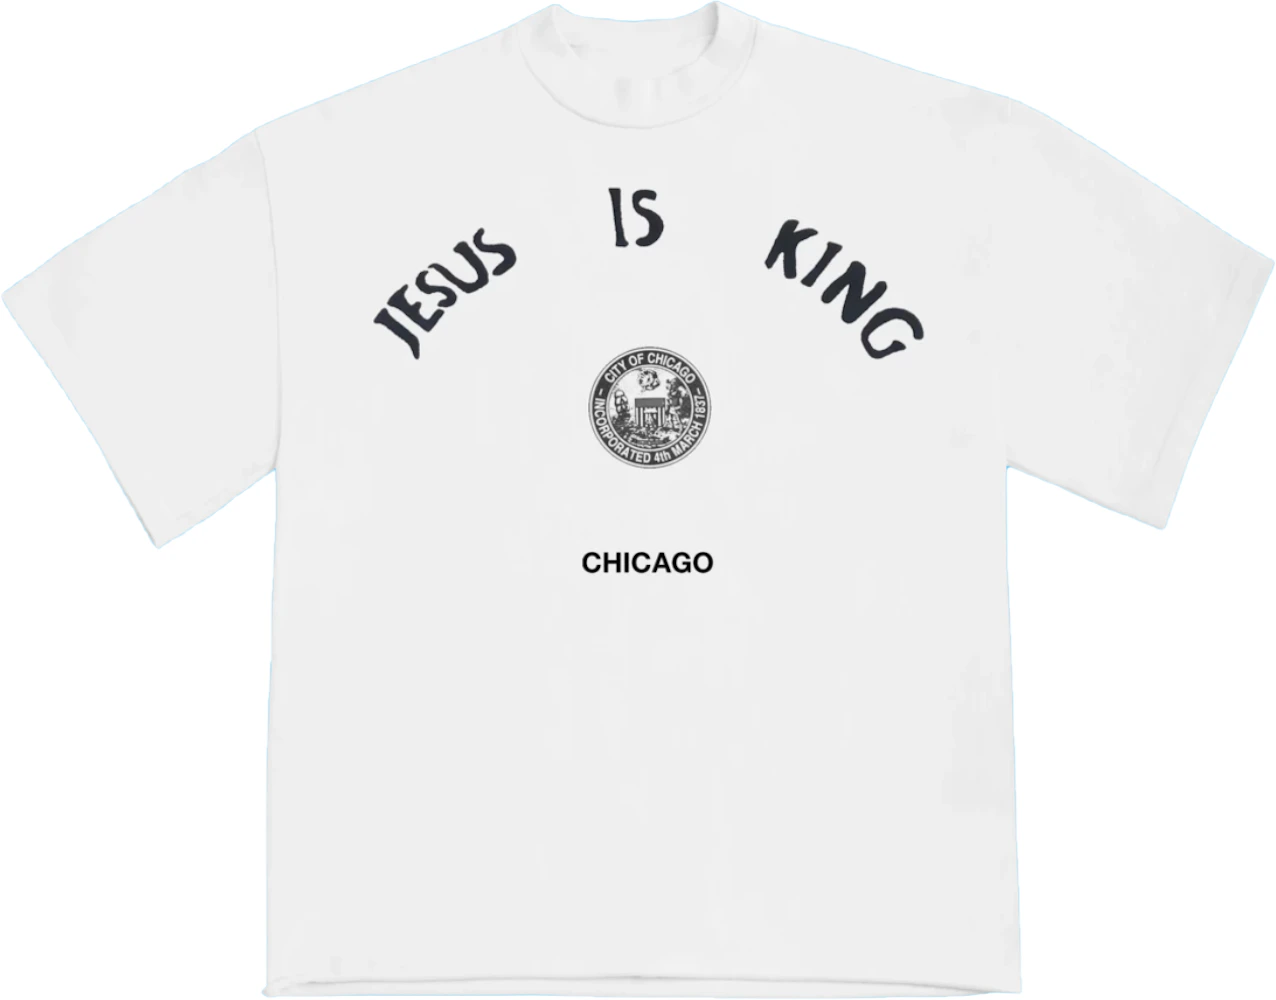 Afdæk eventyr I særdeleshed Kanye West Jesus Is King Chicago Seal T Shirt White - FW19 Men's - US